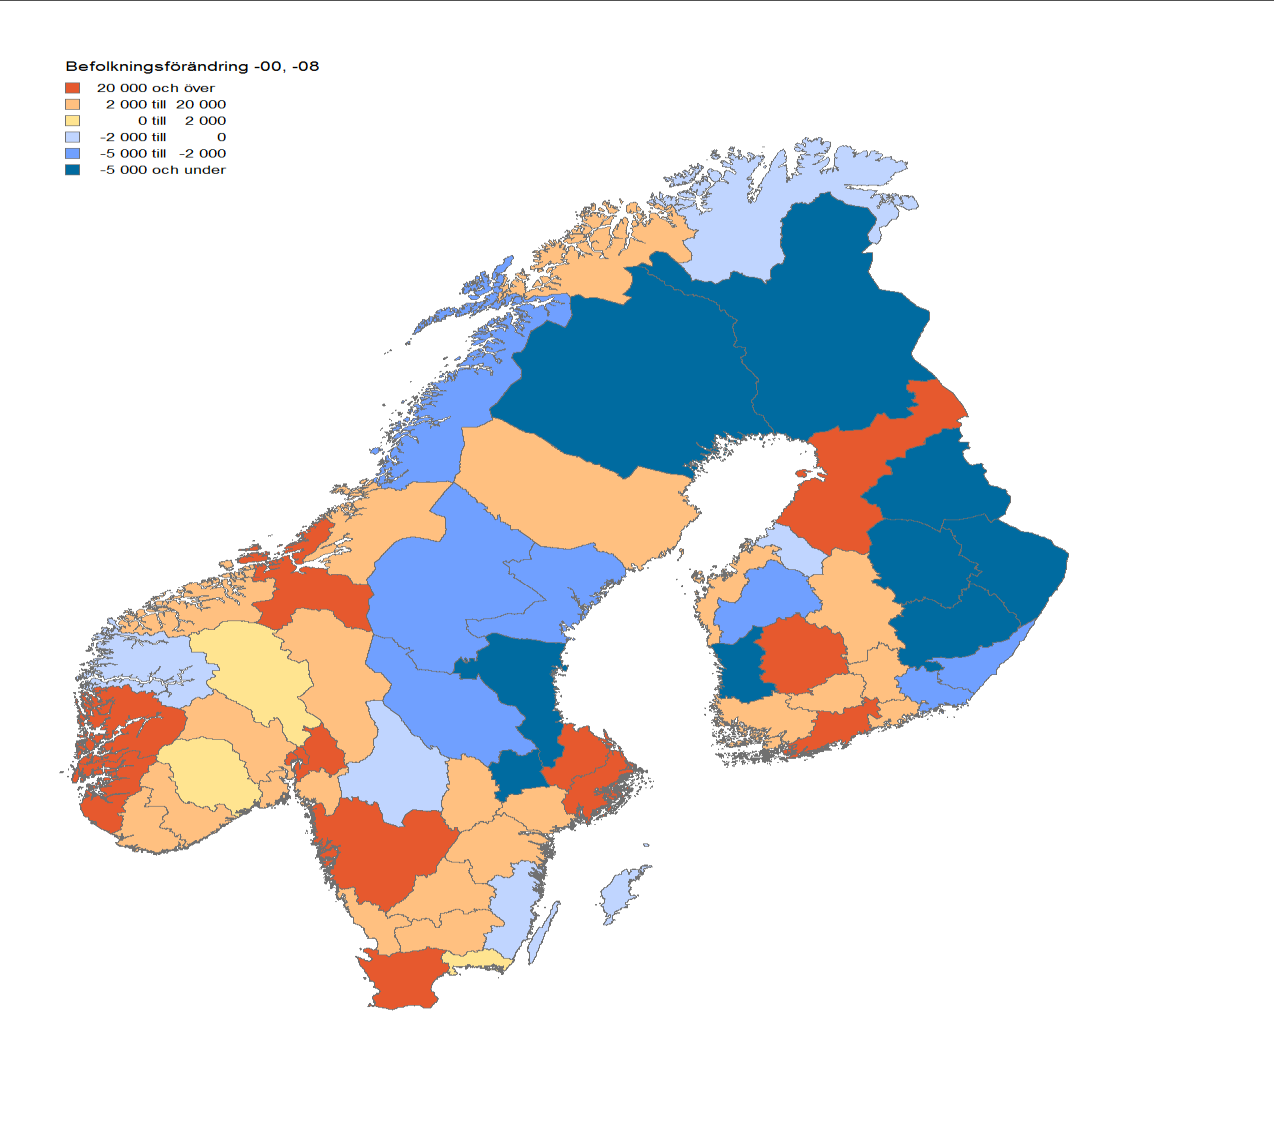 Bilaga 6 Befolkningsutveckling i Finland och Norge En grov jämförelse av befolkningsutvecklingen med våra grannländer Finland och Norge uppvisar att länderna har något olika utveckling.